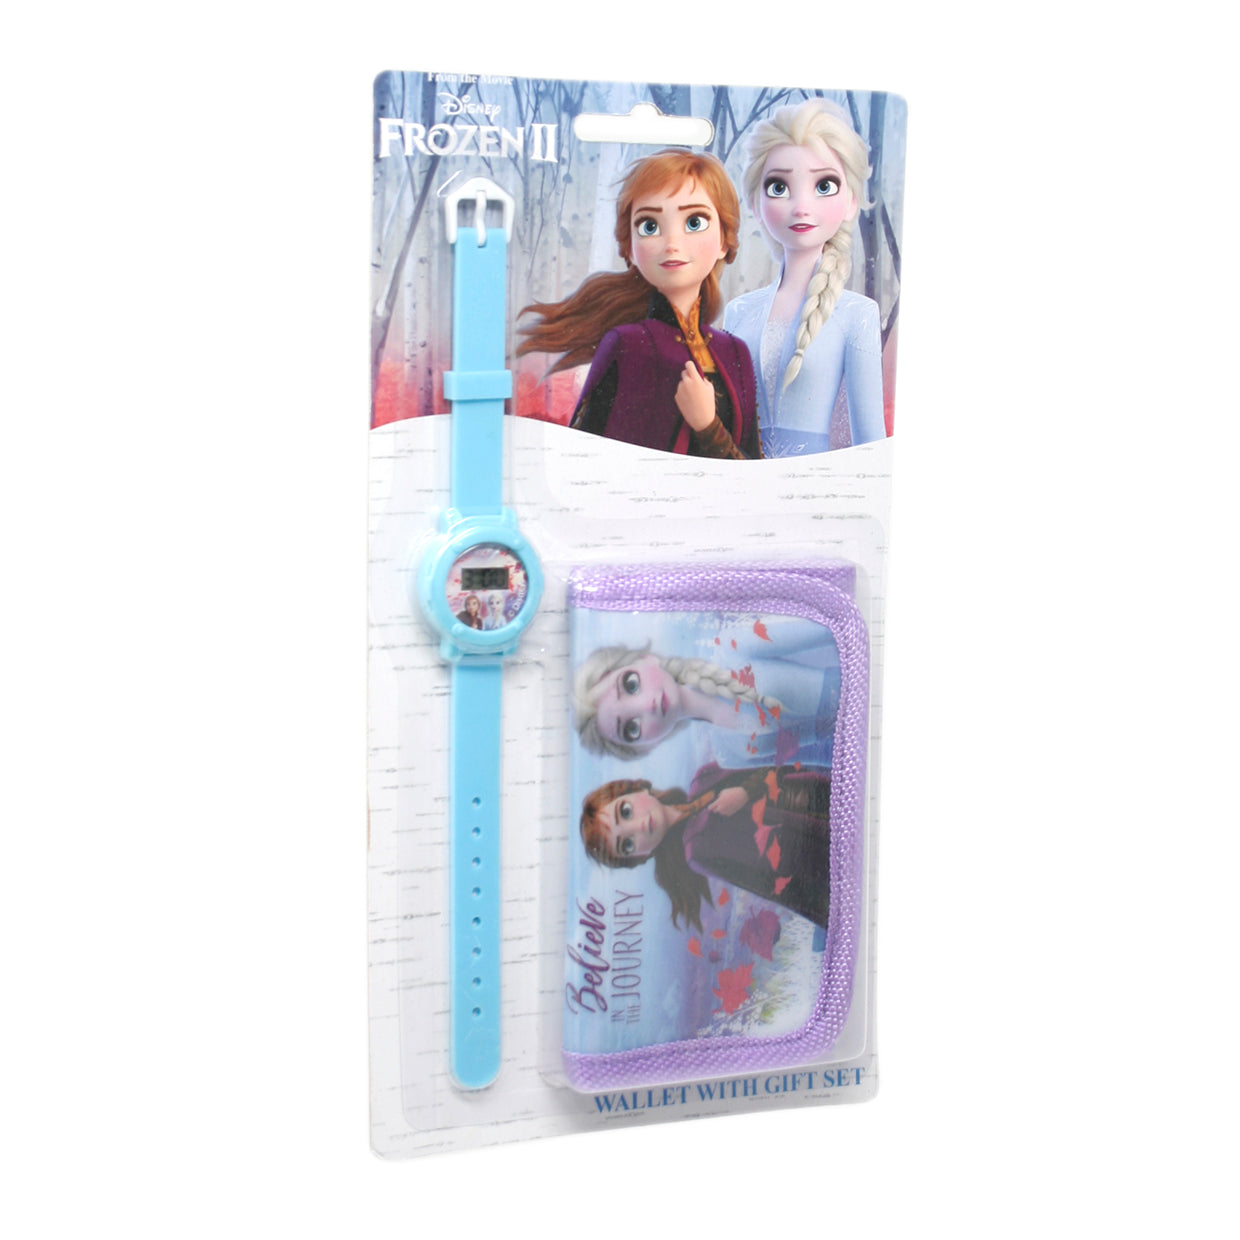 Frozen II Children's digital watch and wallet set - Rich Kids Playground